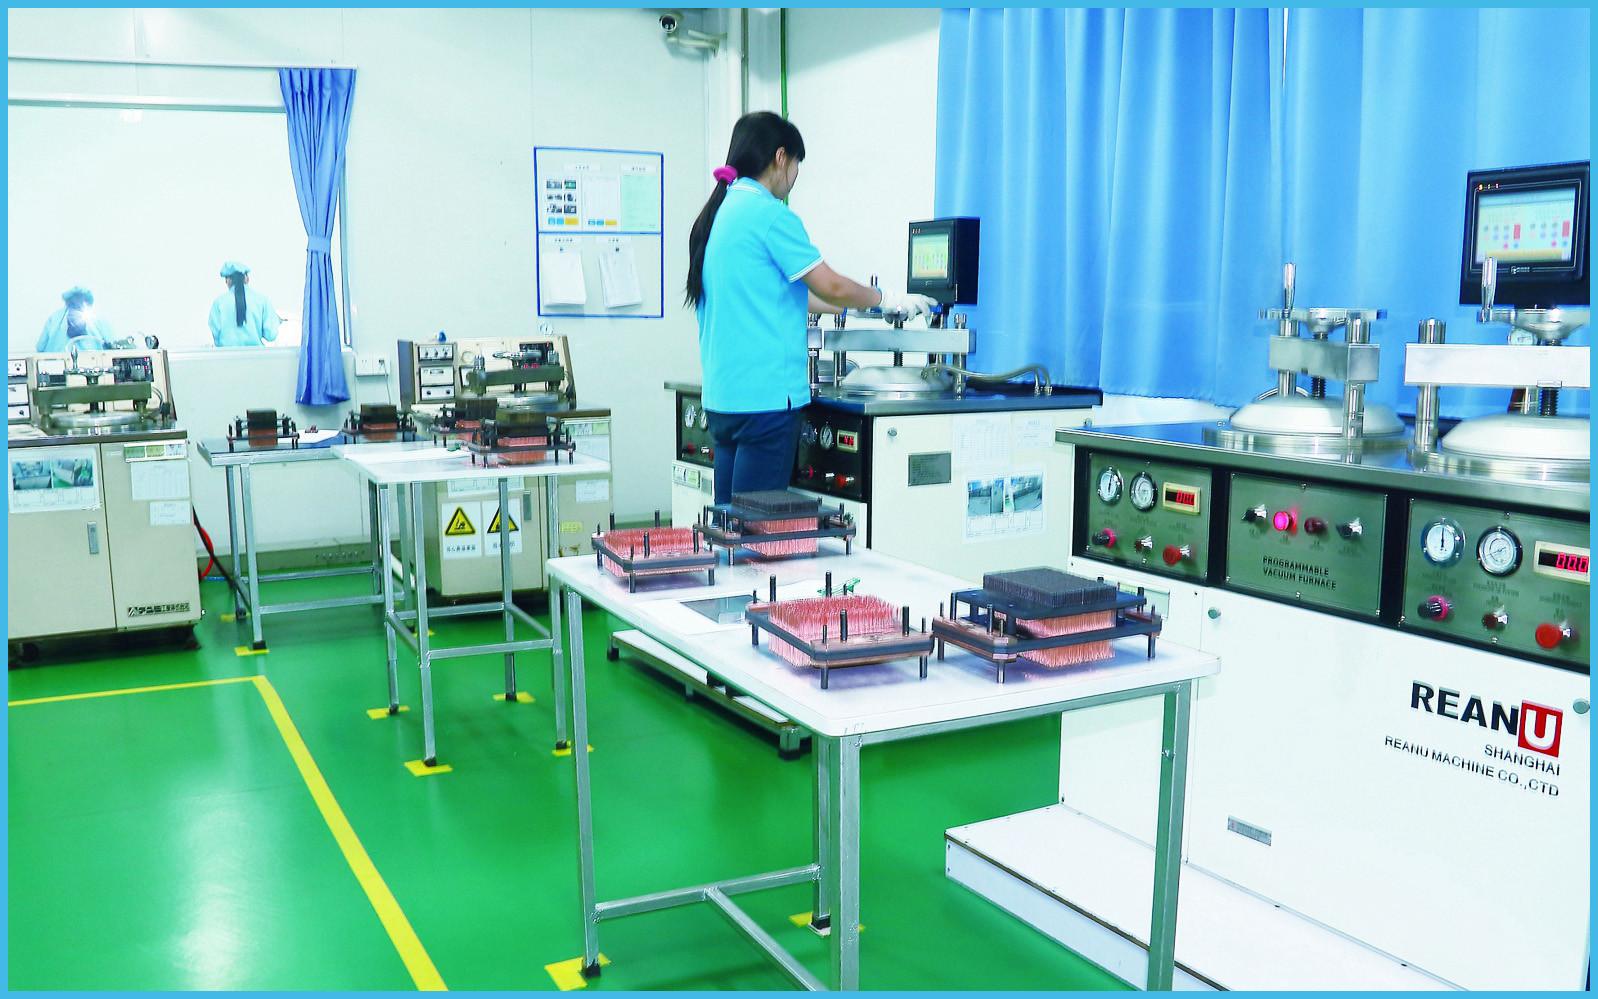 Dongguan Ampfort Electronics Co., Ltd. 공장 생산 라인